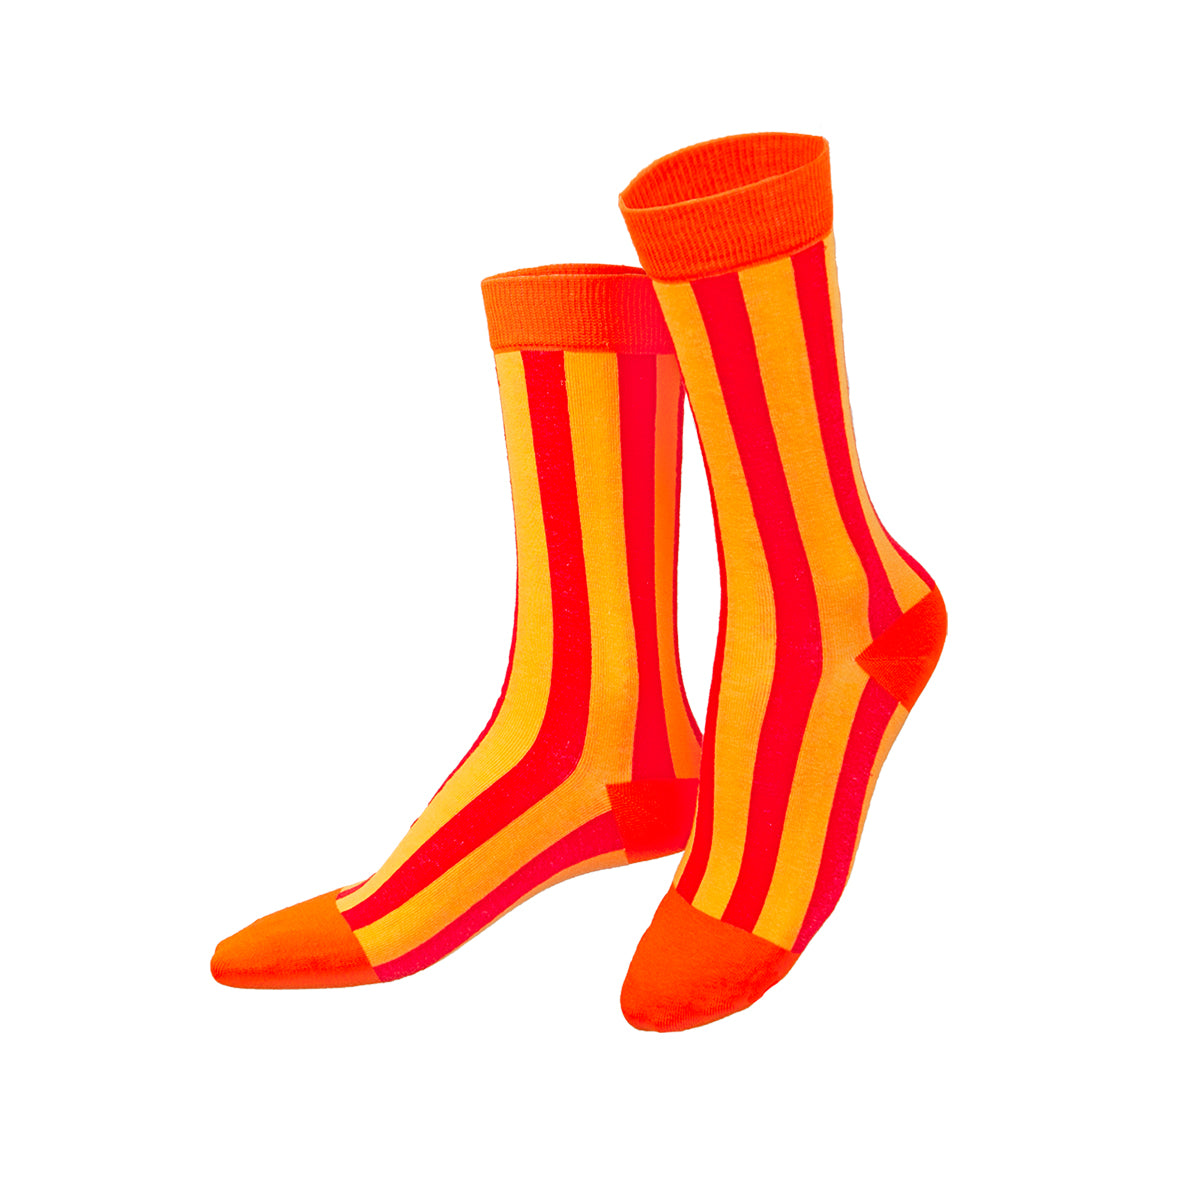 Socks Juicy Oranges (2 pairs)